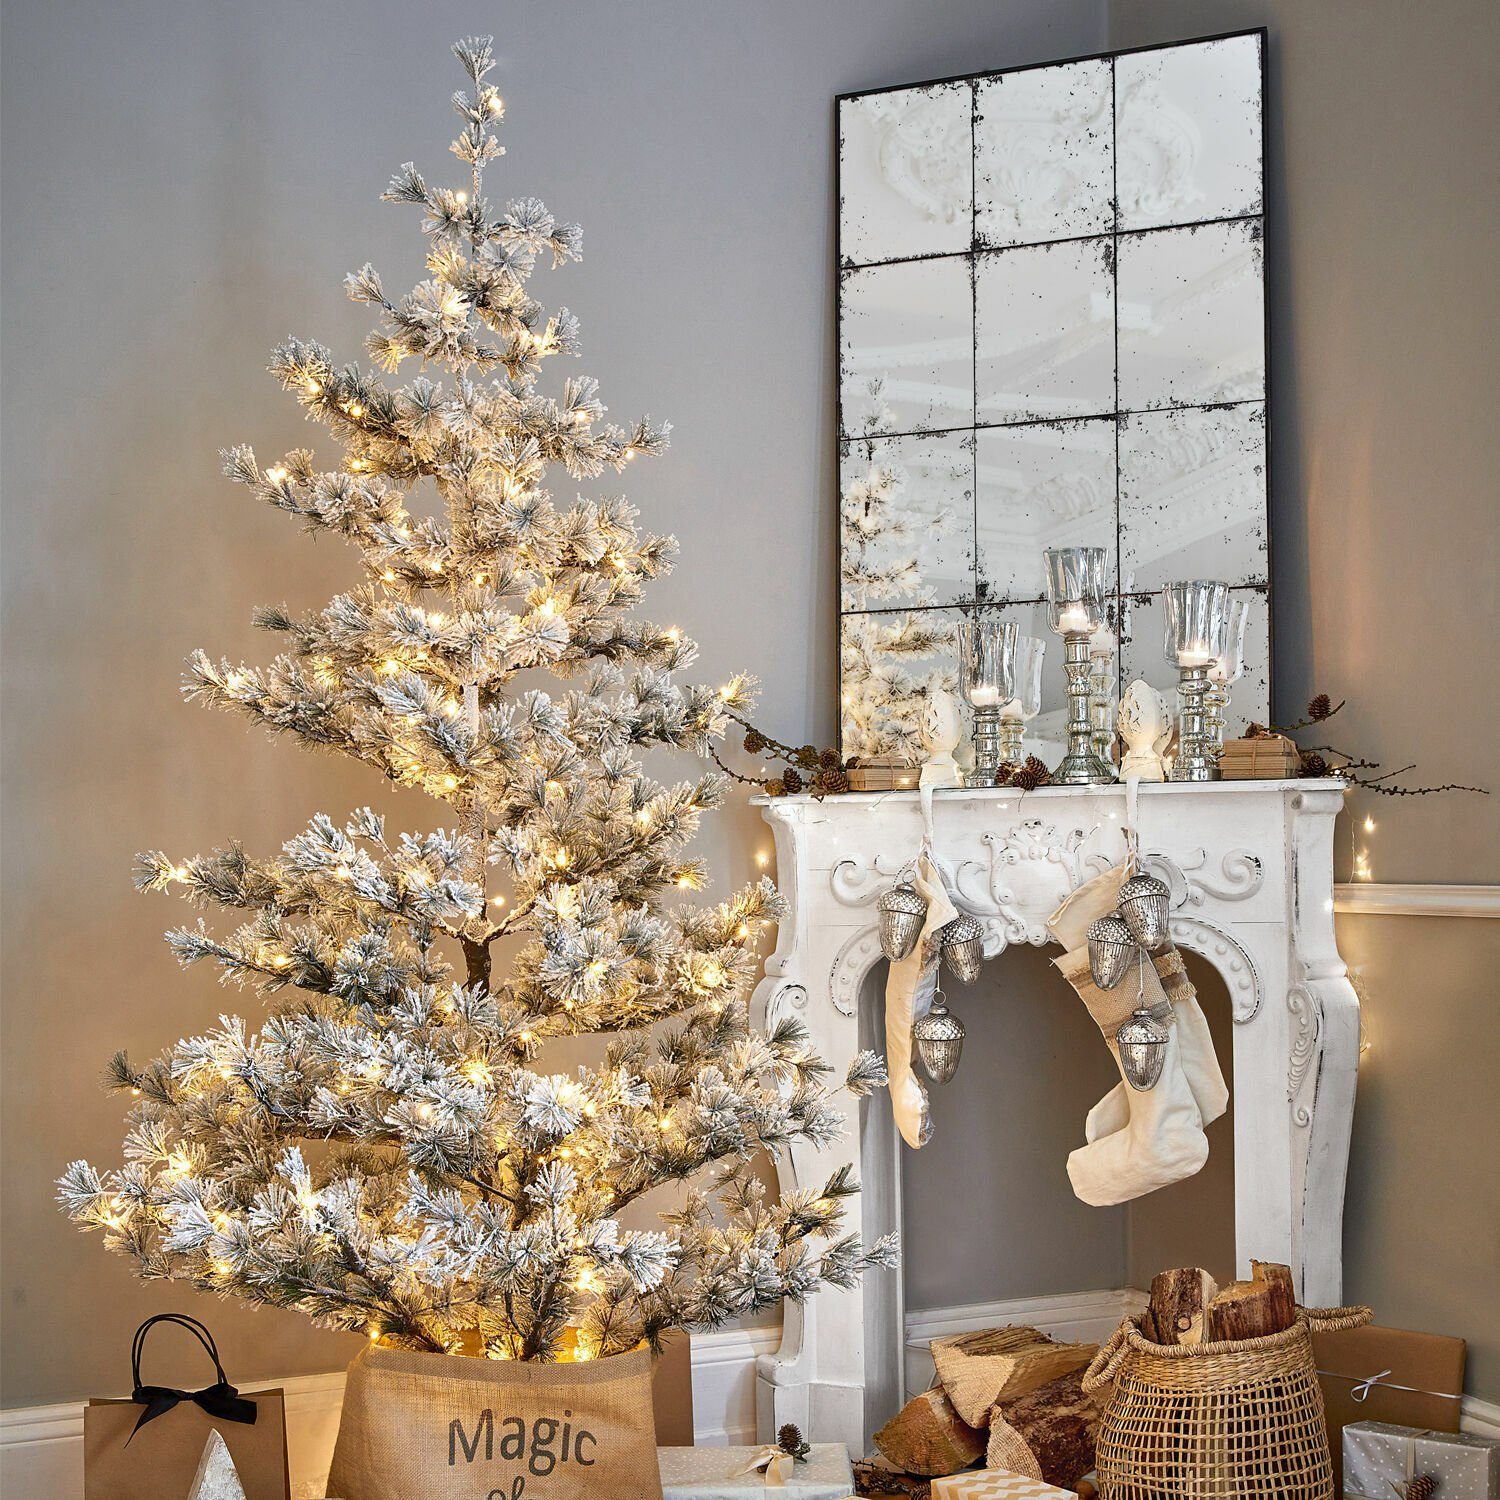 Künstlicher Mirabeau Weihnachtsbaum grün/weiß Sapi Weihnachtsbaum